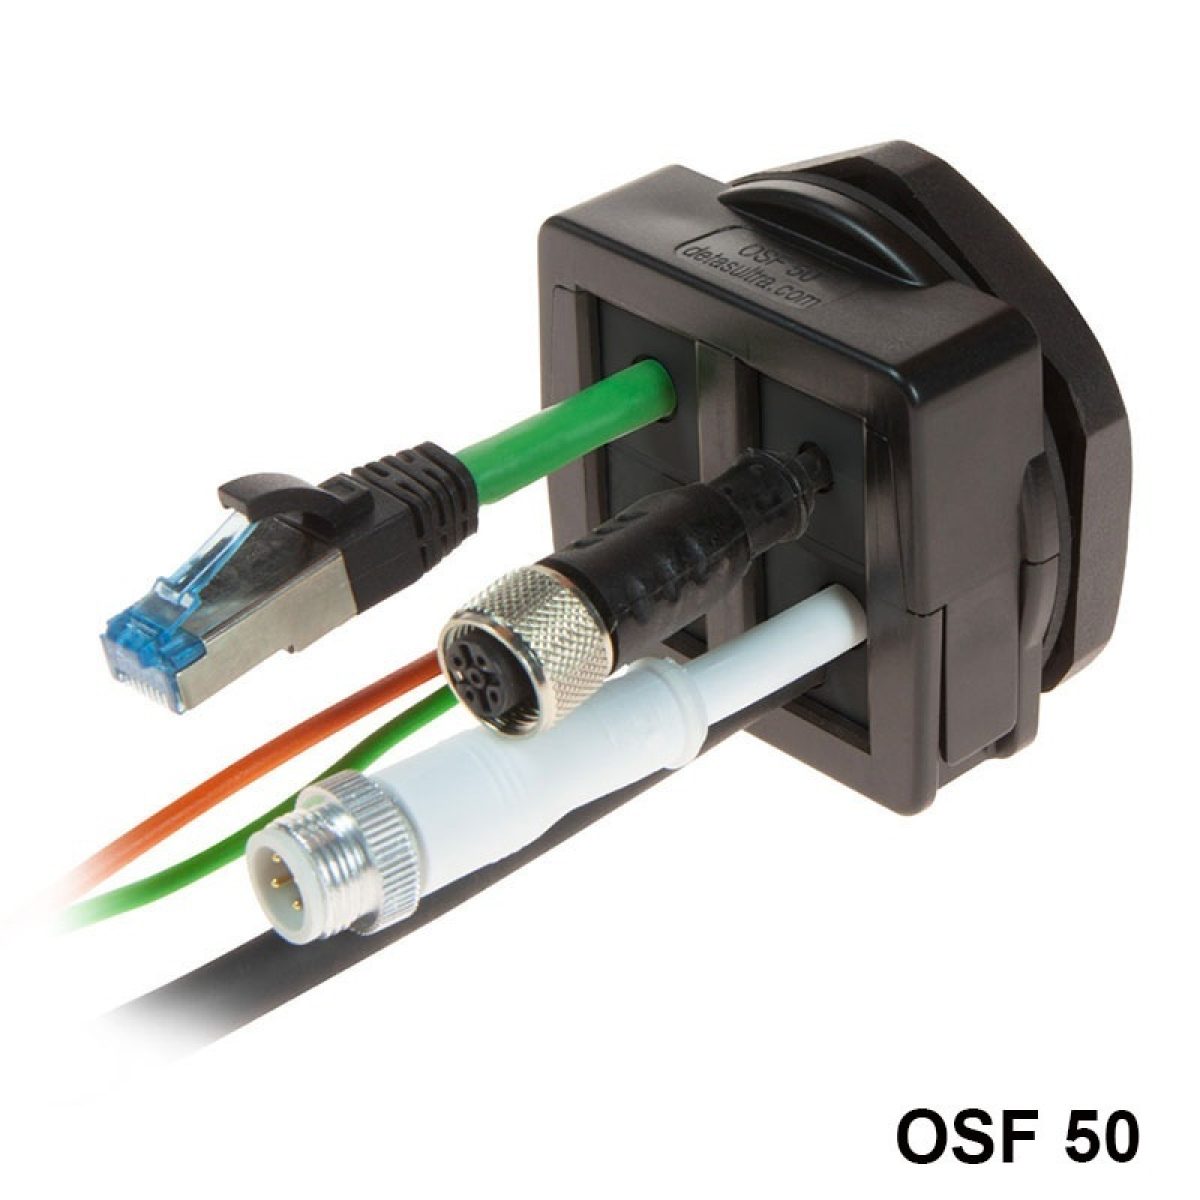 OSF 50